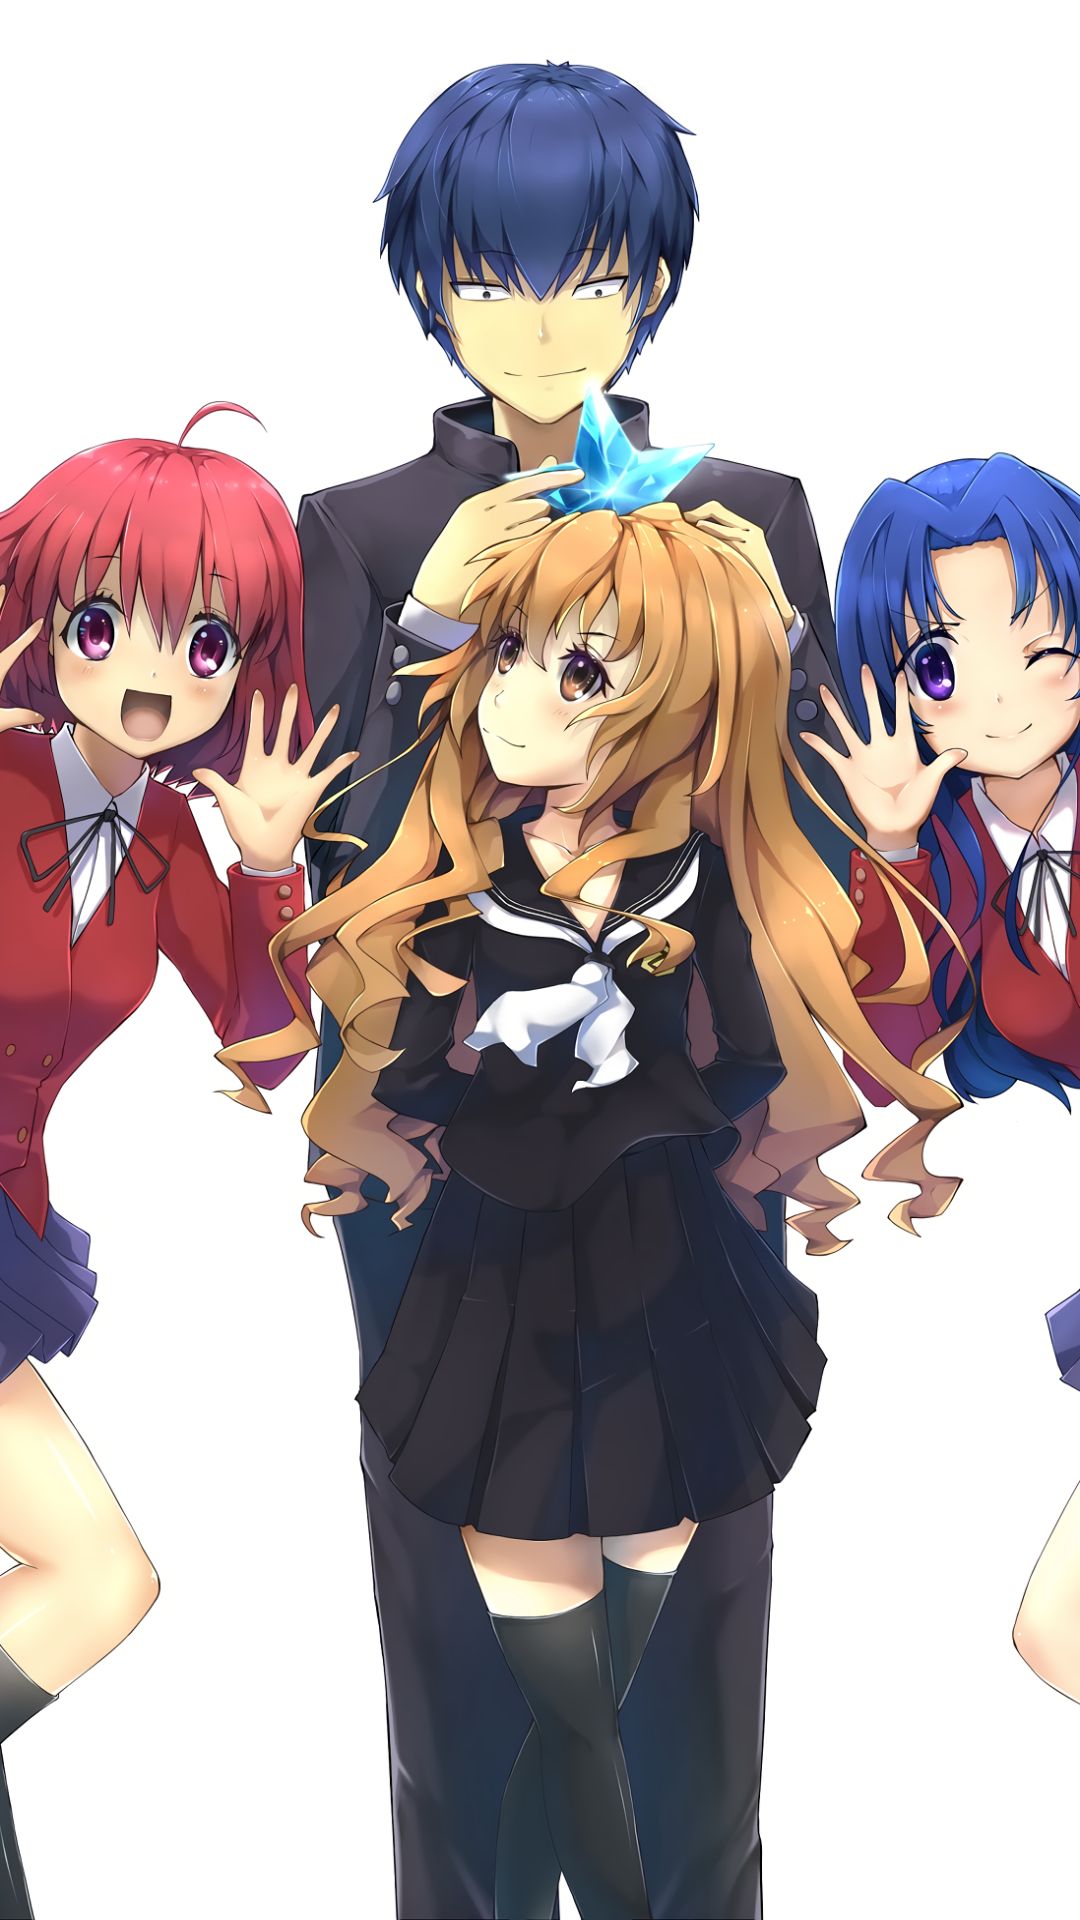 HD wallpaper: Anime, Toradora!, Ami Kawashima, Hisamitsu Noto